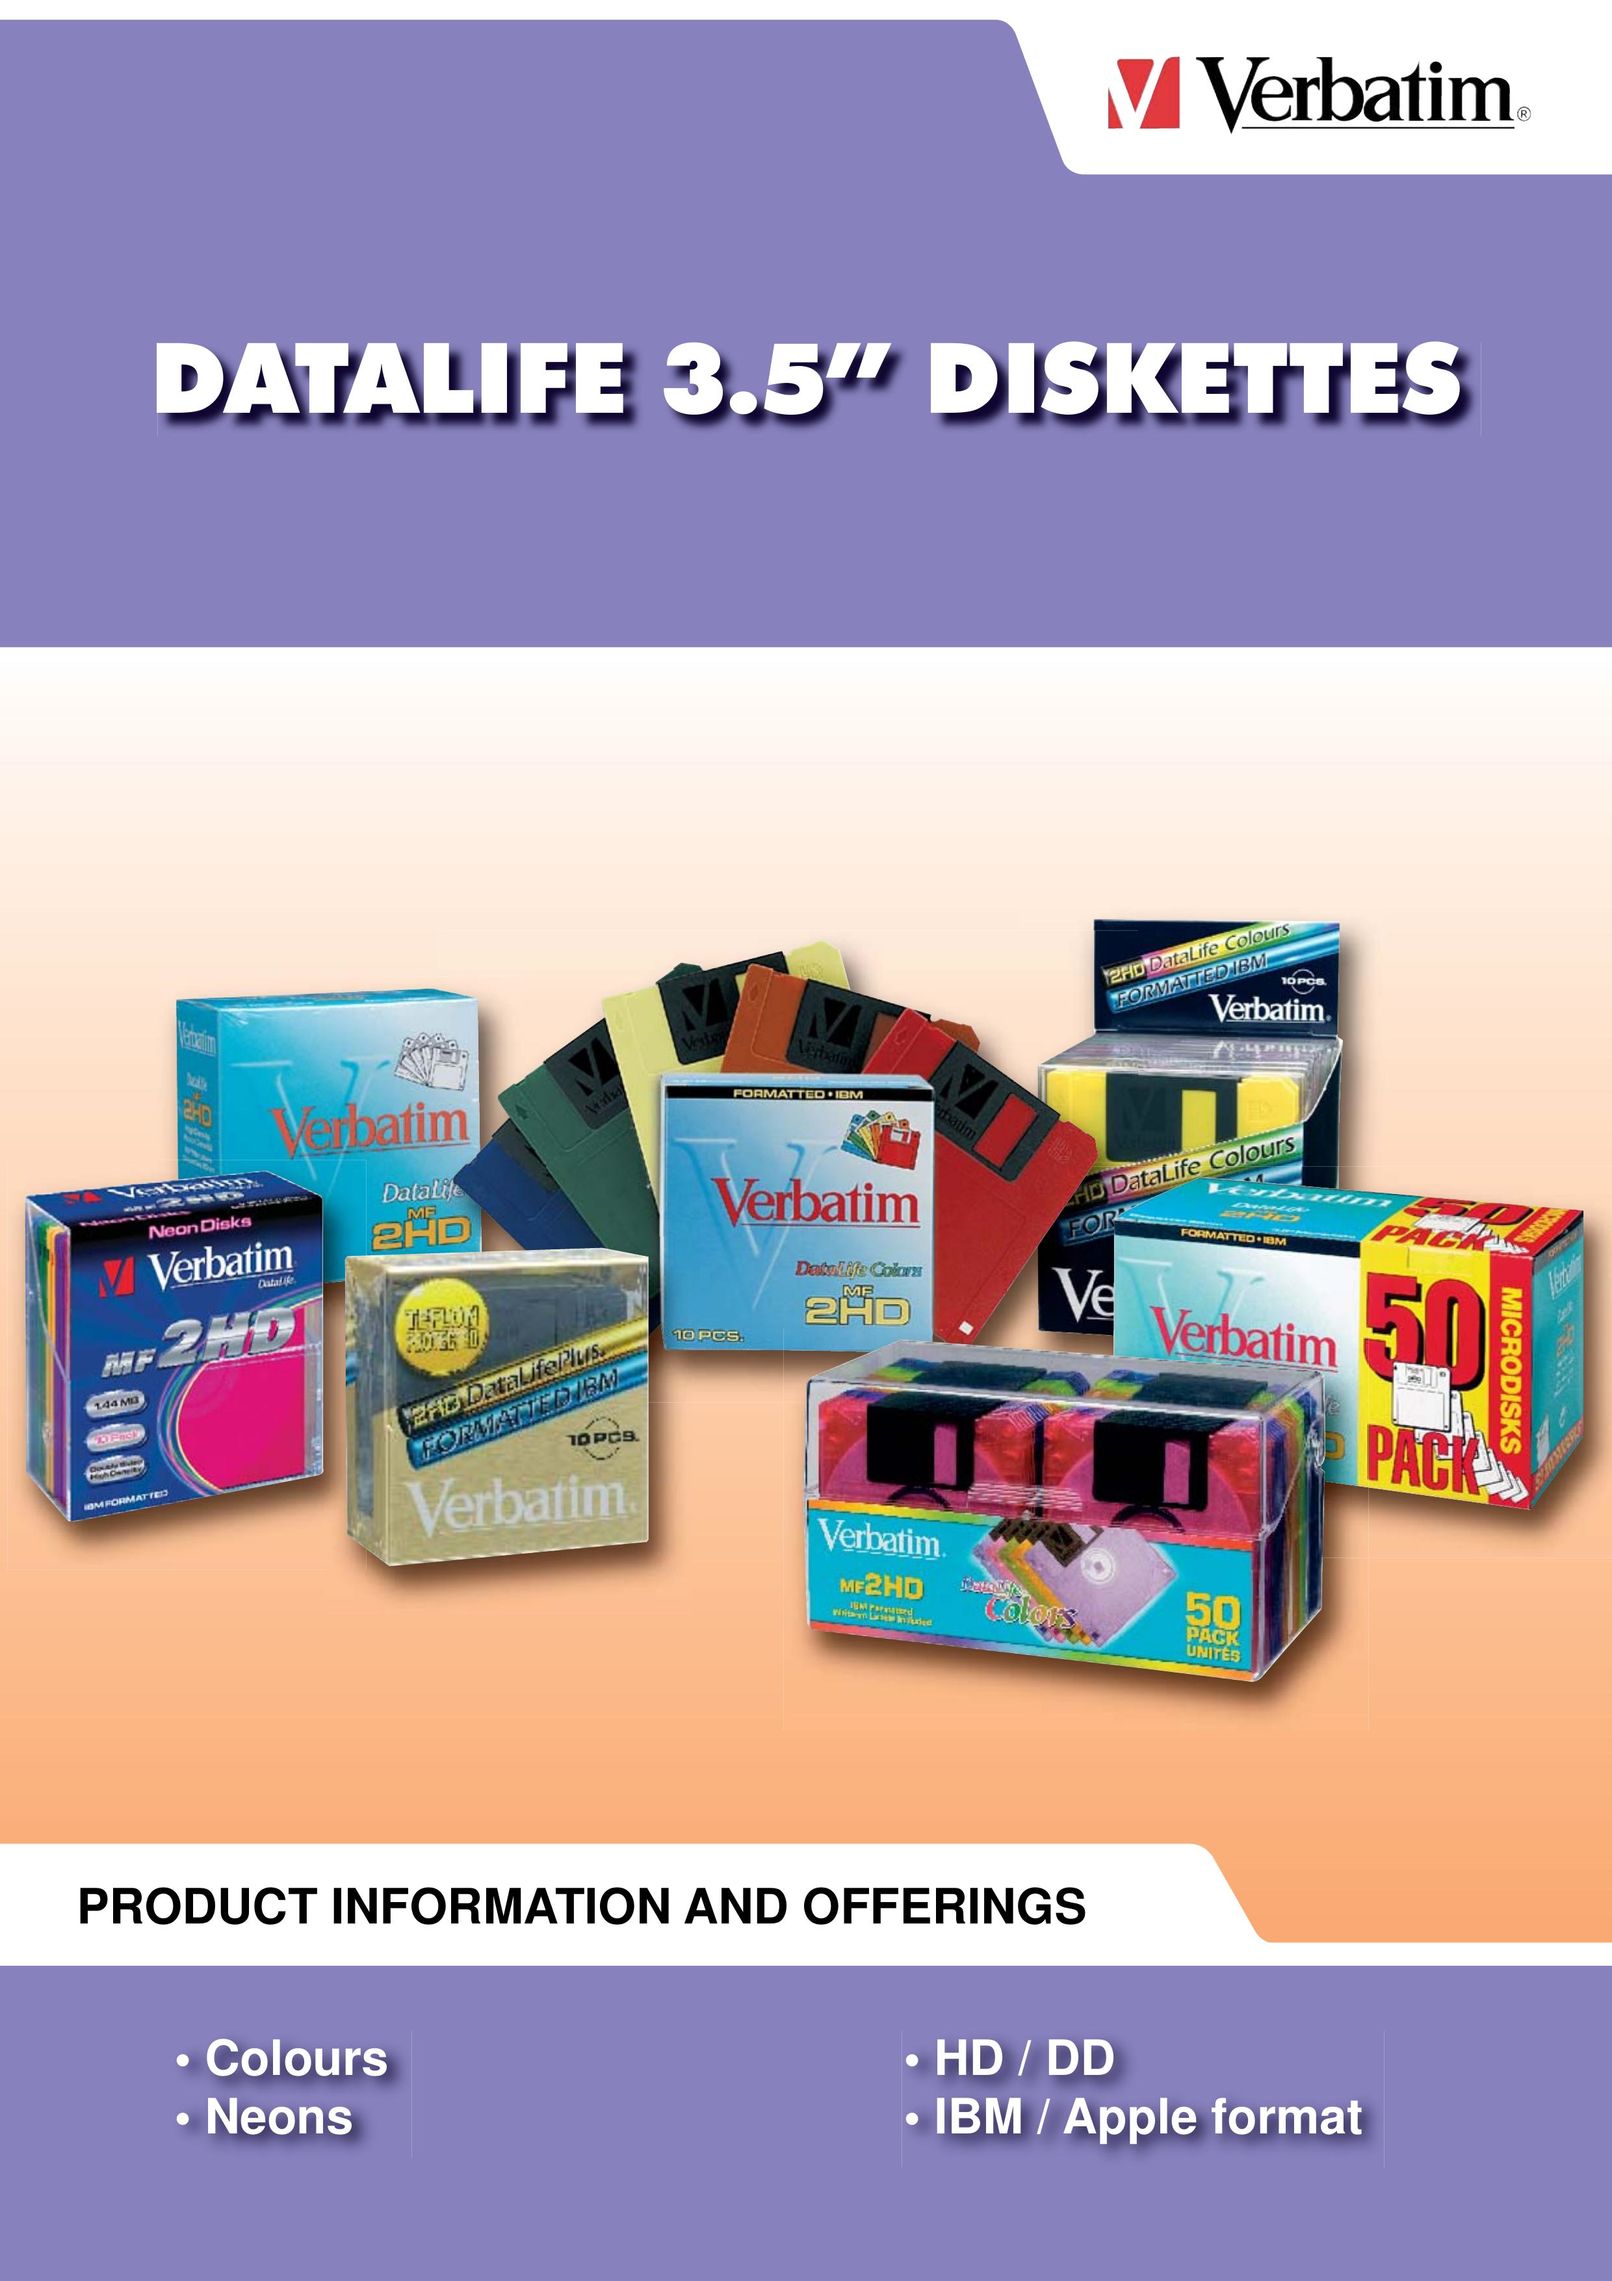 Verbatim Datalife 3.5" Diskette Computer Drive User Manual